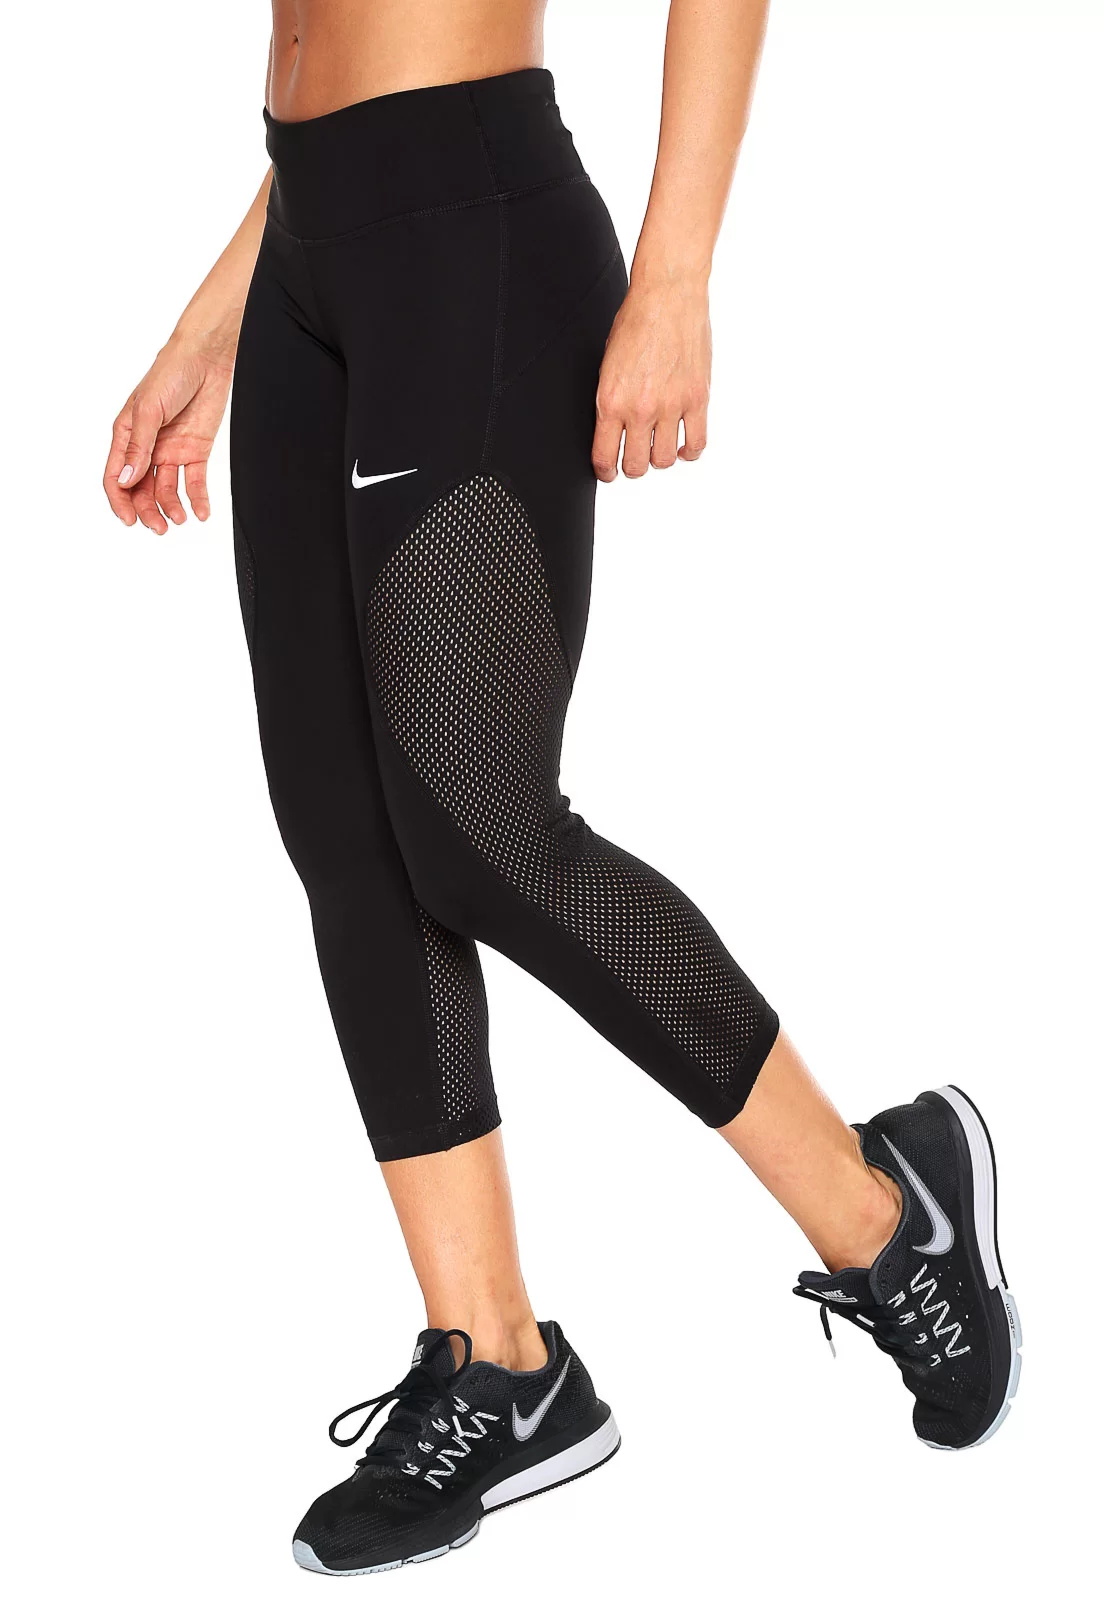 Calça Legging Nike Pro - Feminina em Promoção